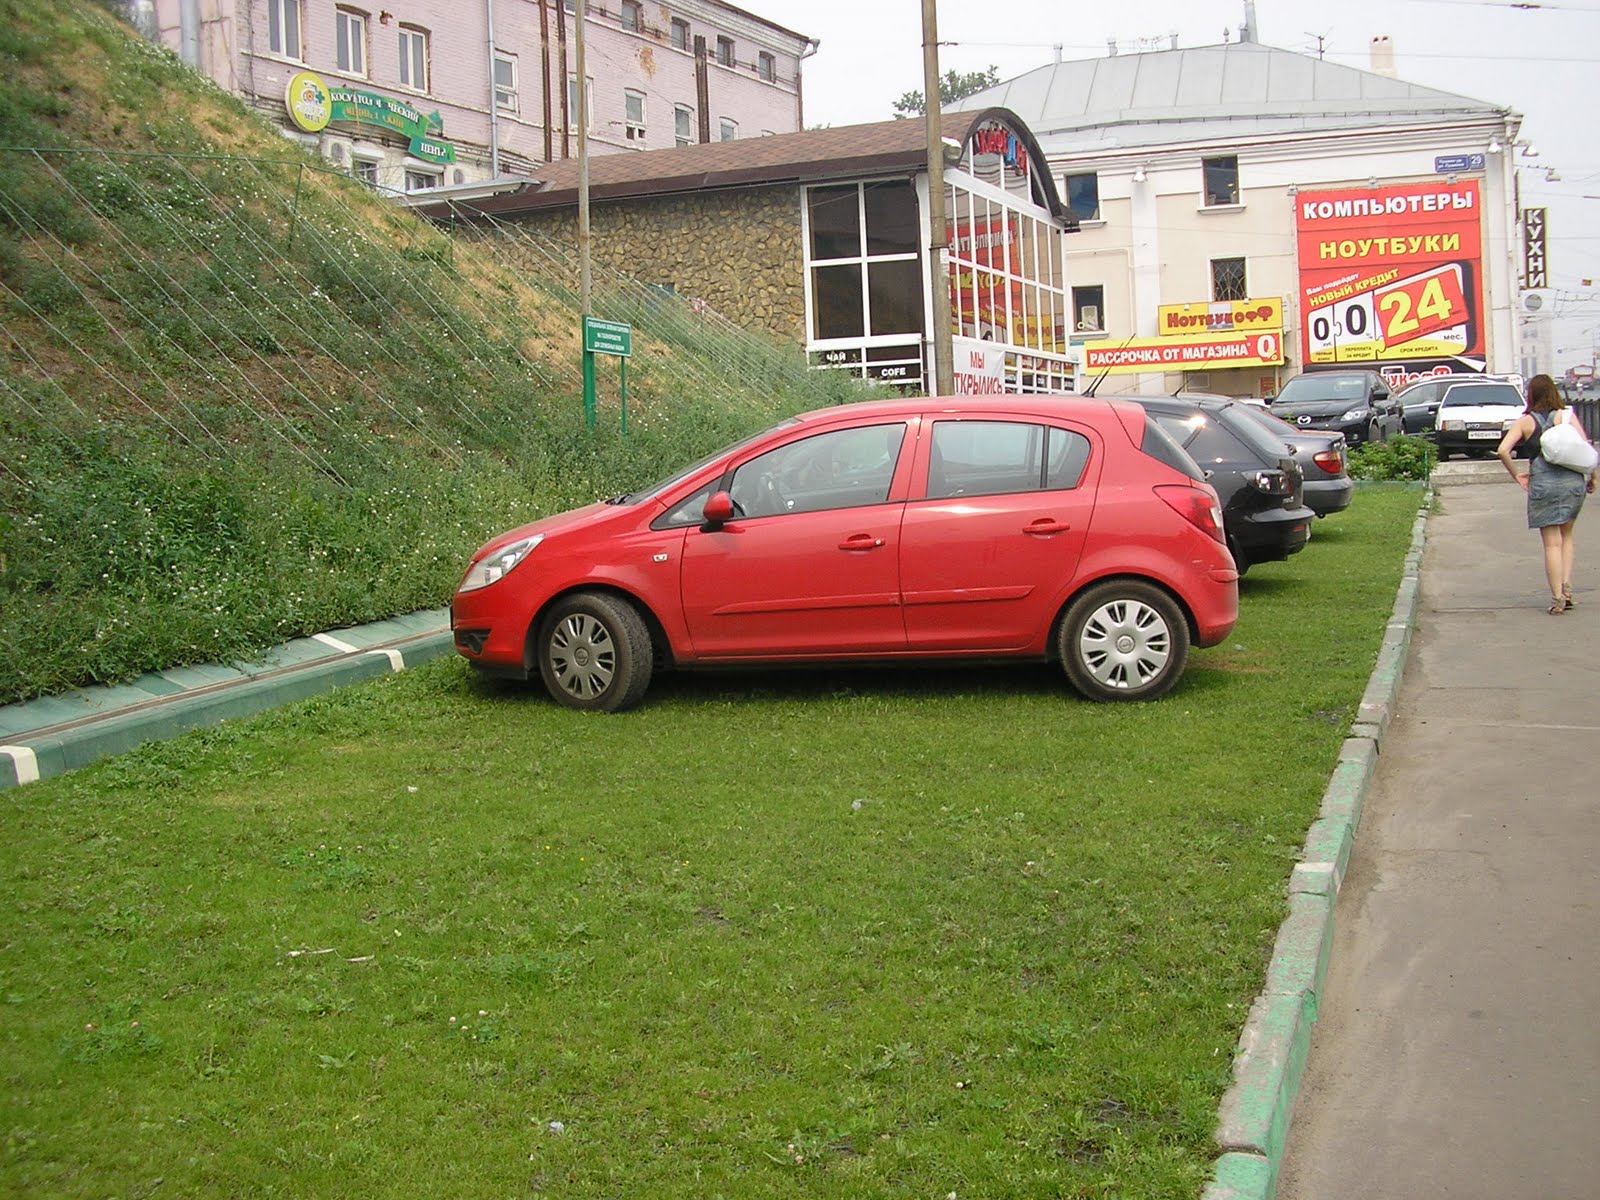 Парковка на зеленой зоне